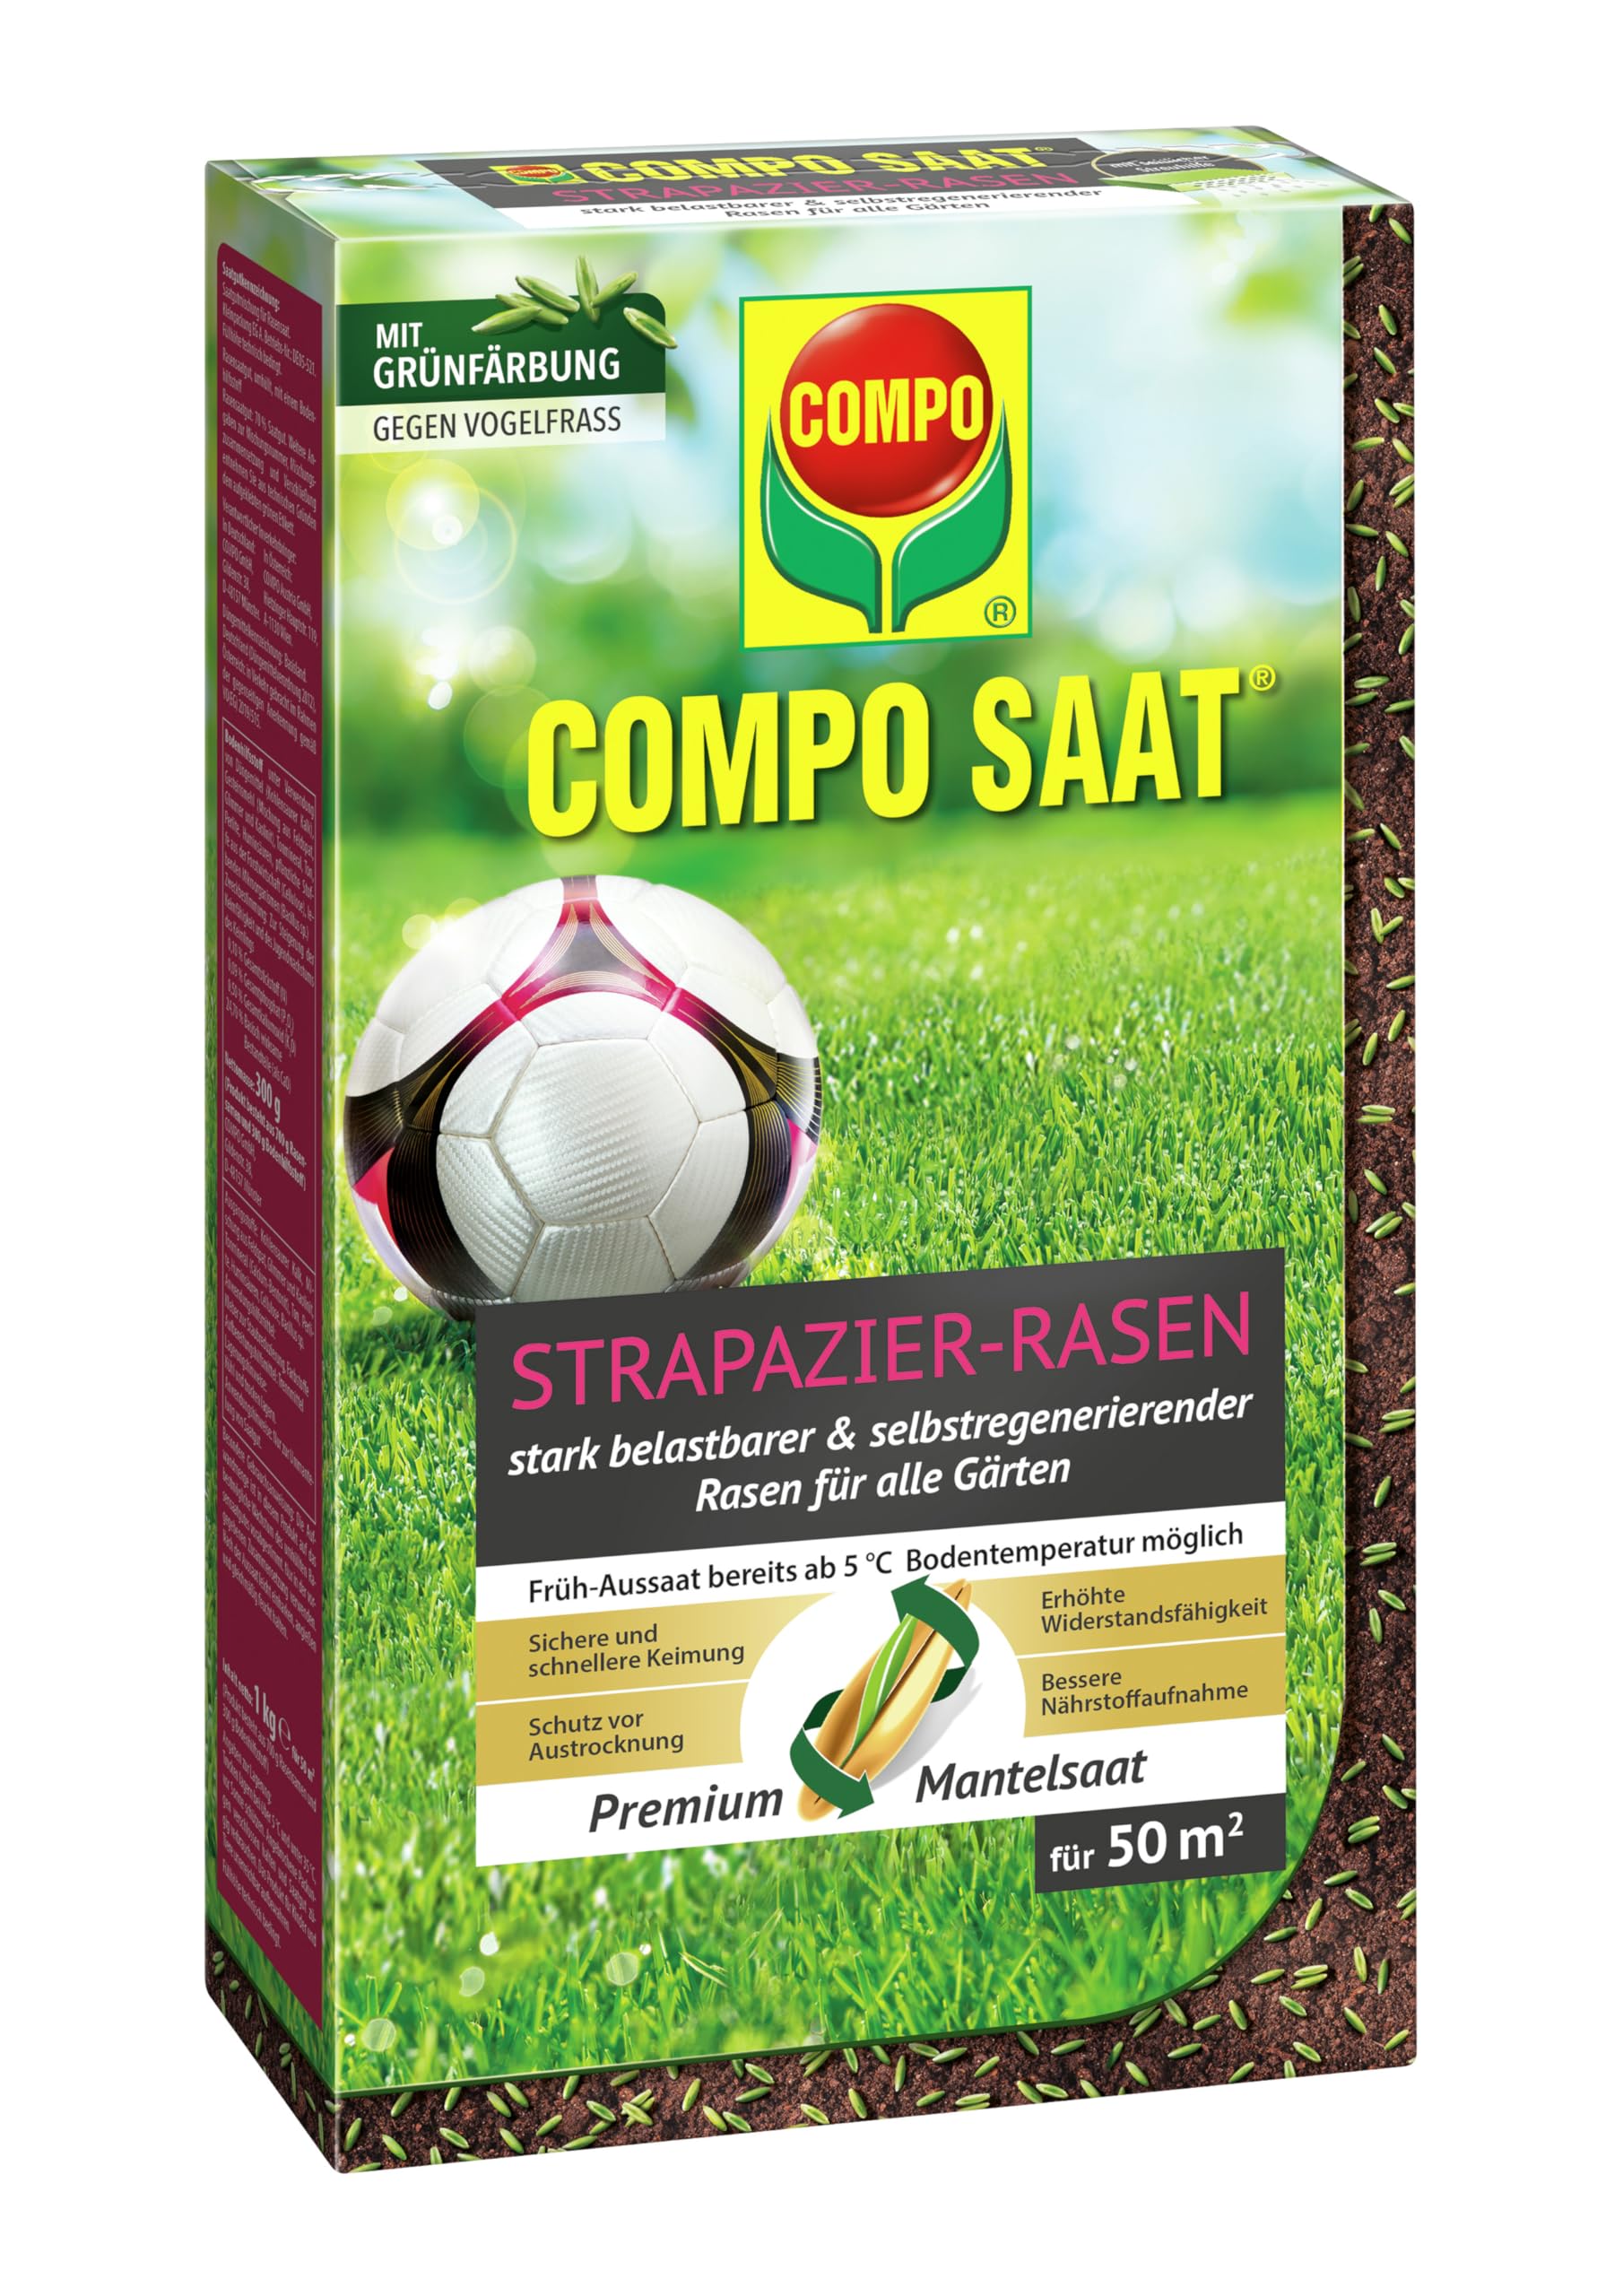 COMPO SAAT Strapazier-Rasen, Spezielle Rasensaat-Mischung mit wirkaktivem Keimbeschleuniger, Rasensamen / Grassamen, 1 kg, 50 m²